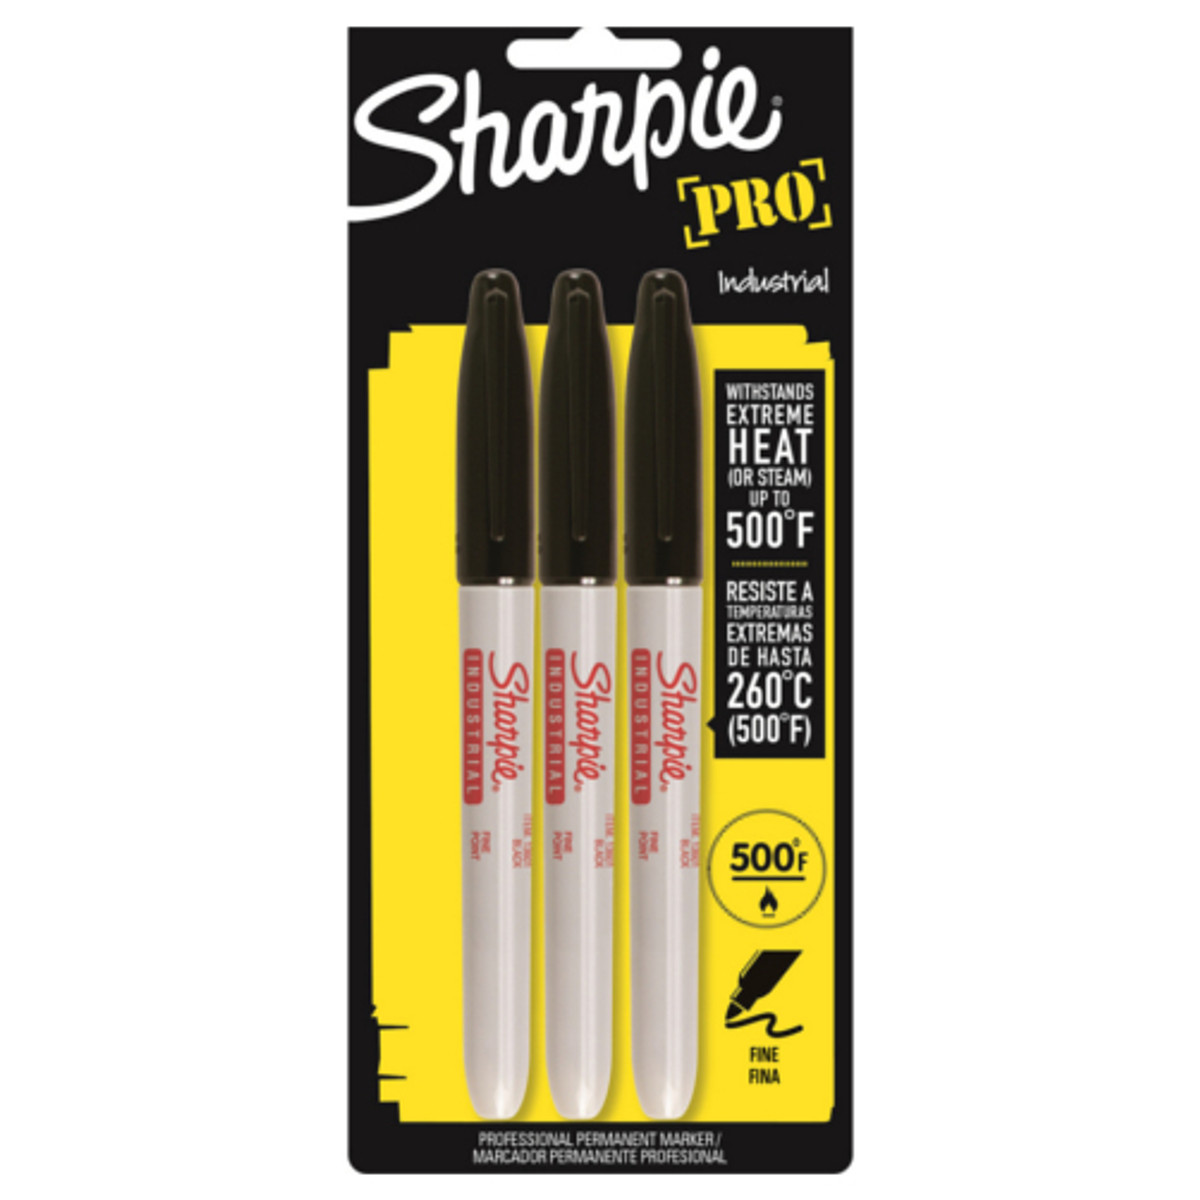 Sharpie Black Fine-Point Permanent Marker